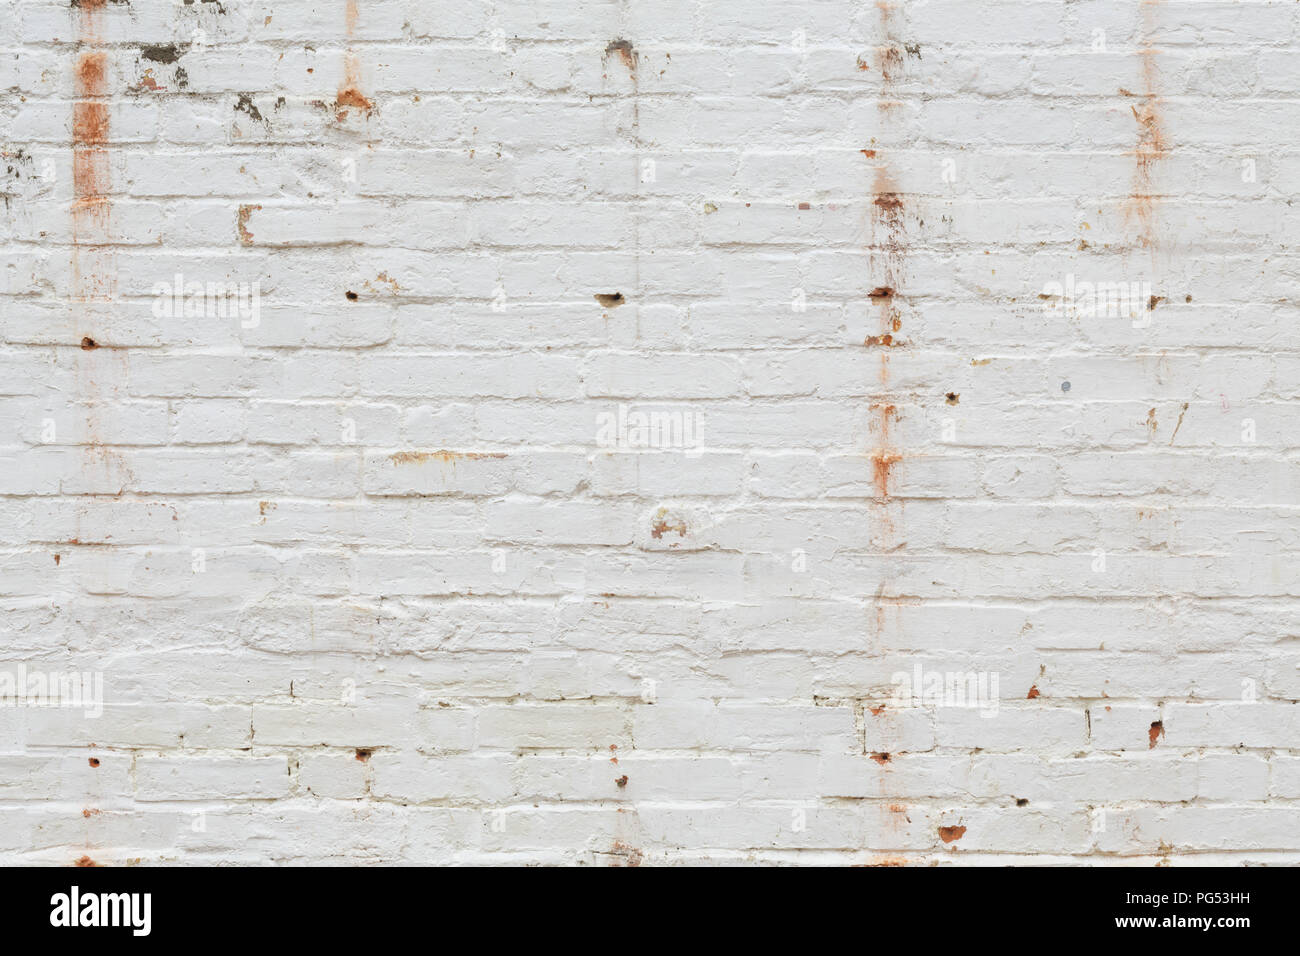 Dettaglio del vecchio muro di mattoni dipinto di bianco e addolorato, peeling e colorate. Ideale per gruppi grunge texture di sfondo Foto Stock